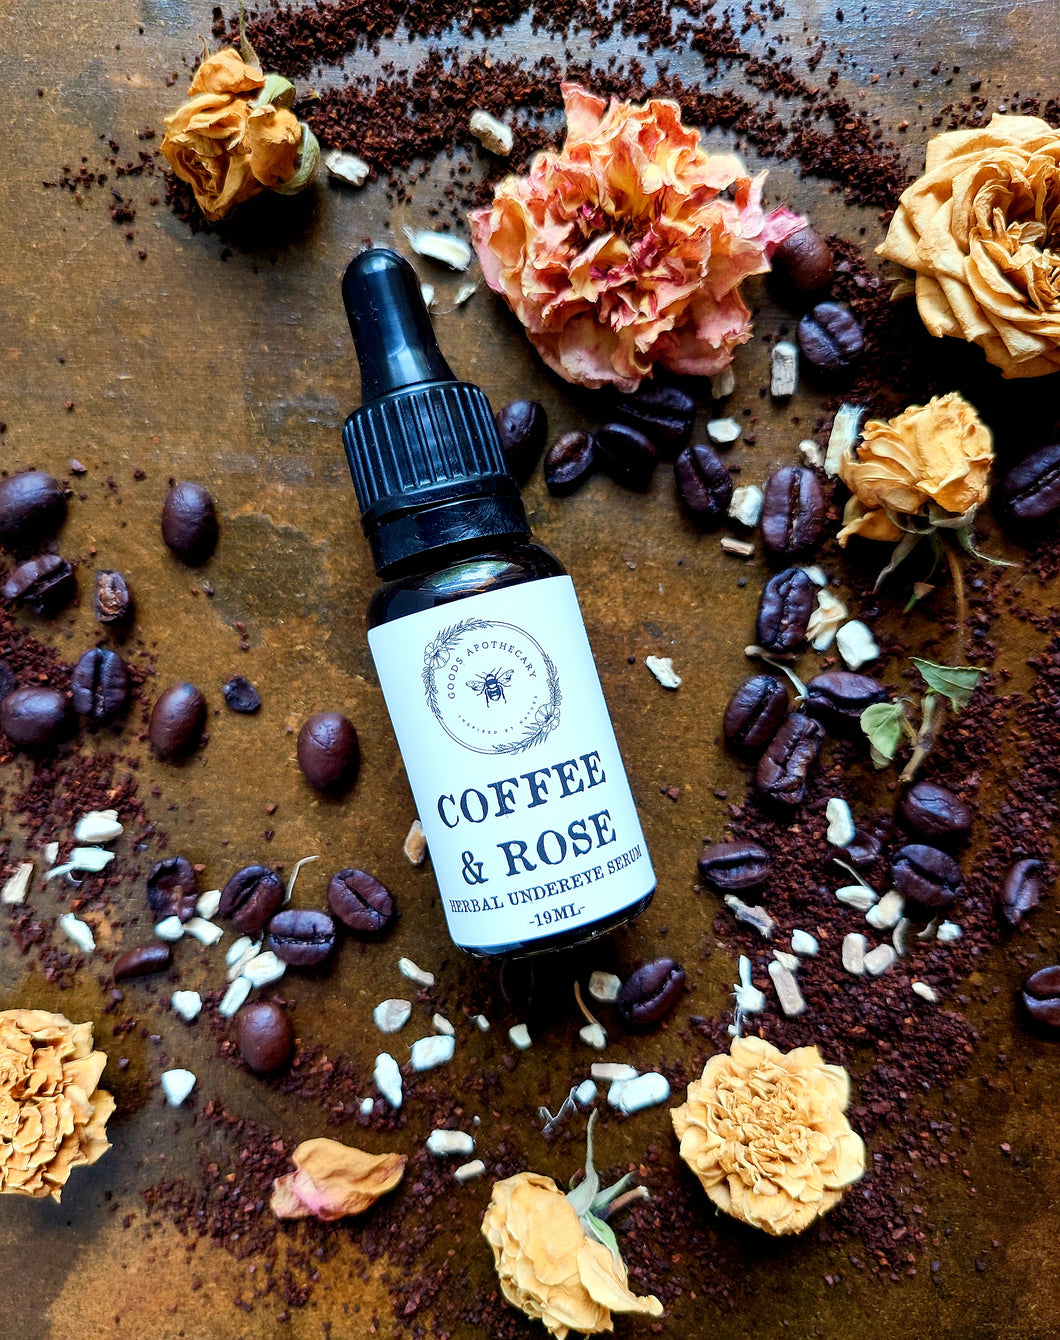 Coffee & Rose Herbal Undereye Serum